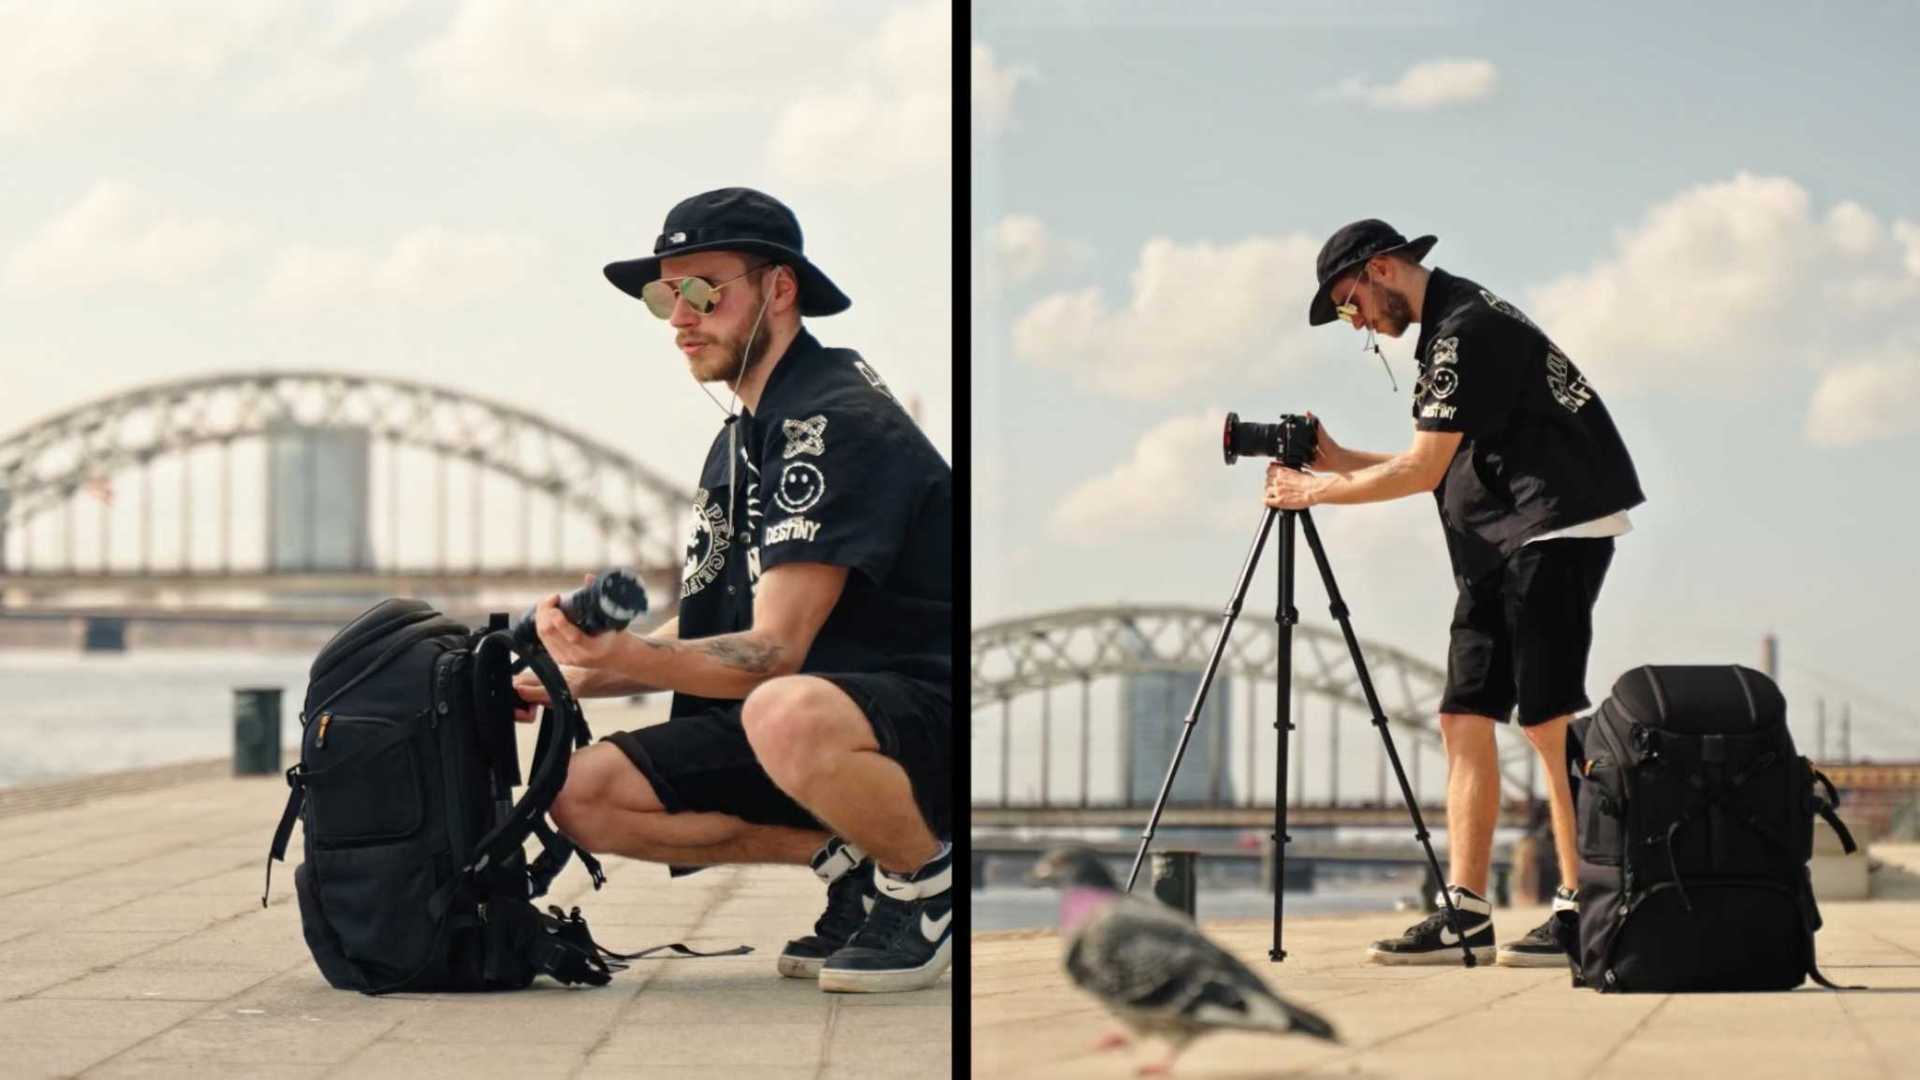 产品视频拍摄 - Tarion摄影背包